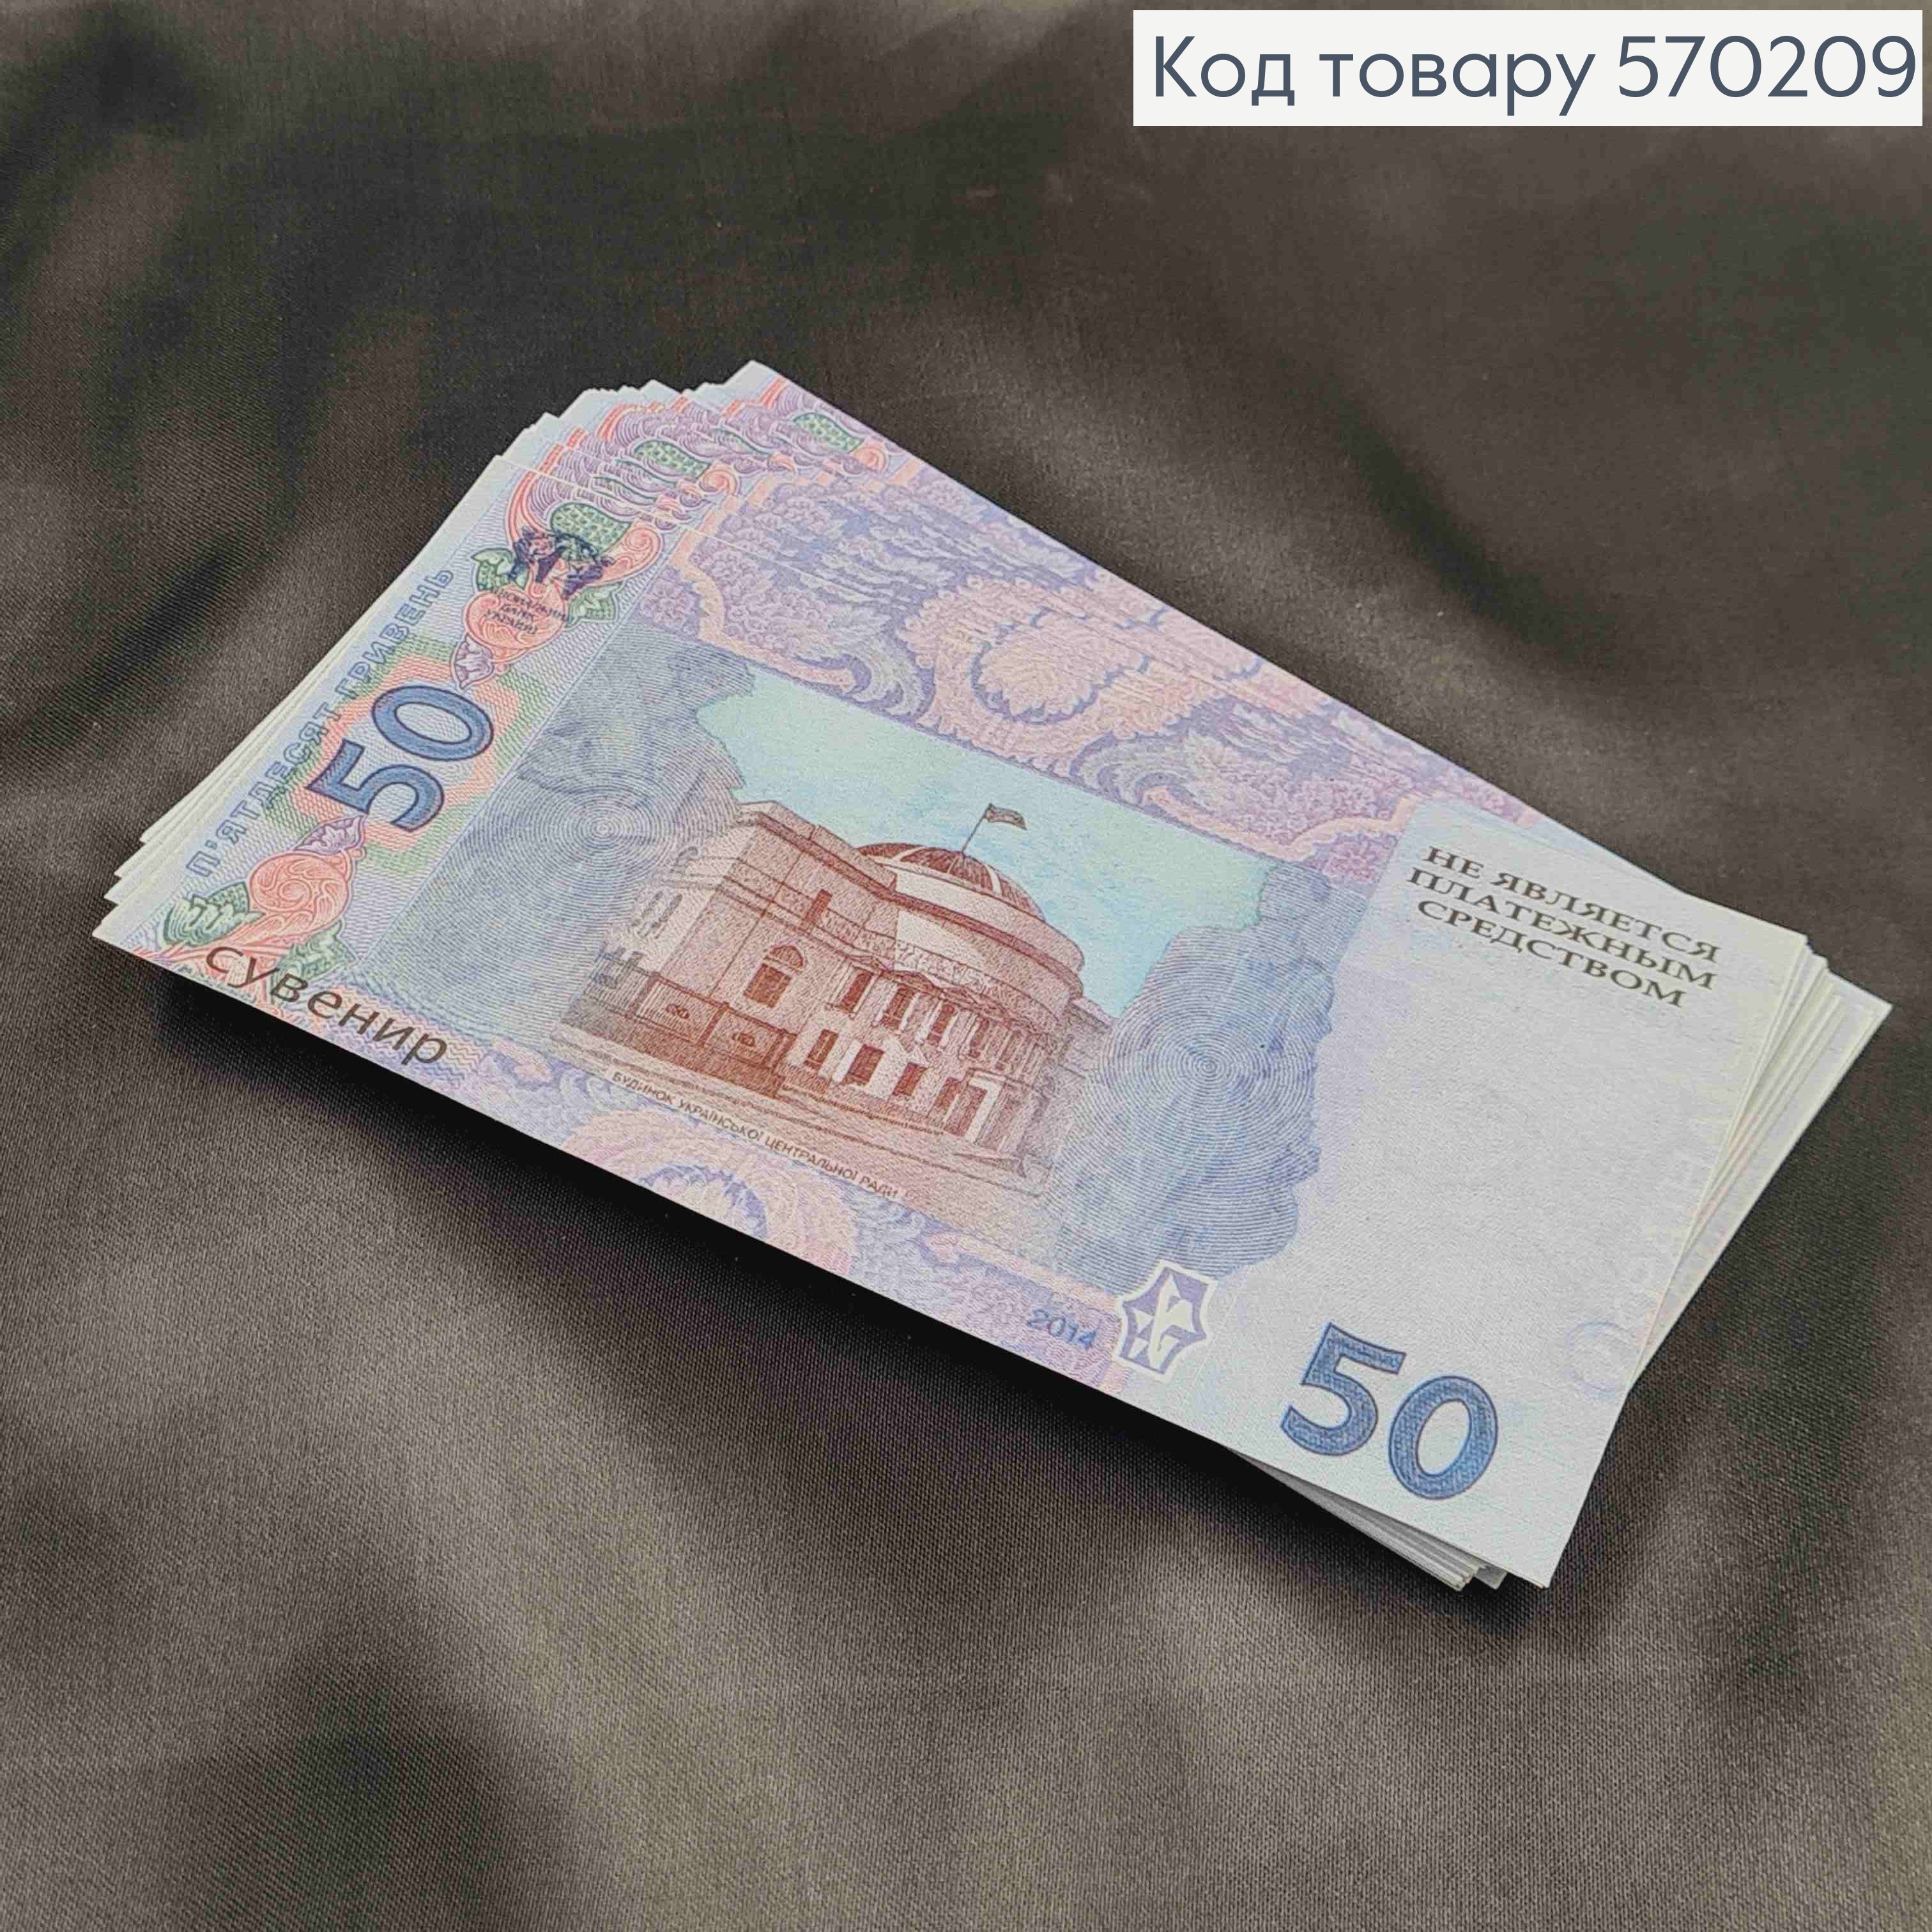 Сувенирные деньги, 50 ГРИВЕН, Уп/100шт, 15*7см 570209 фото 2